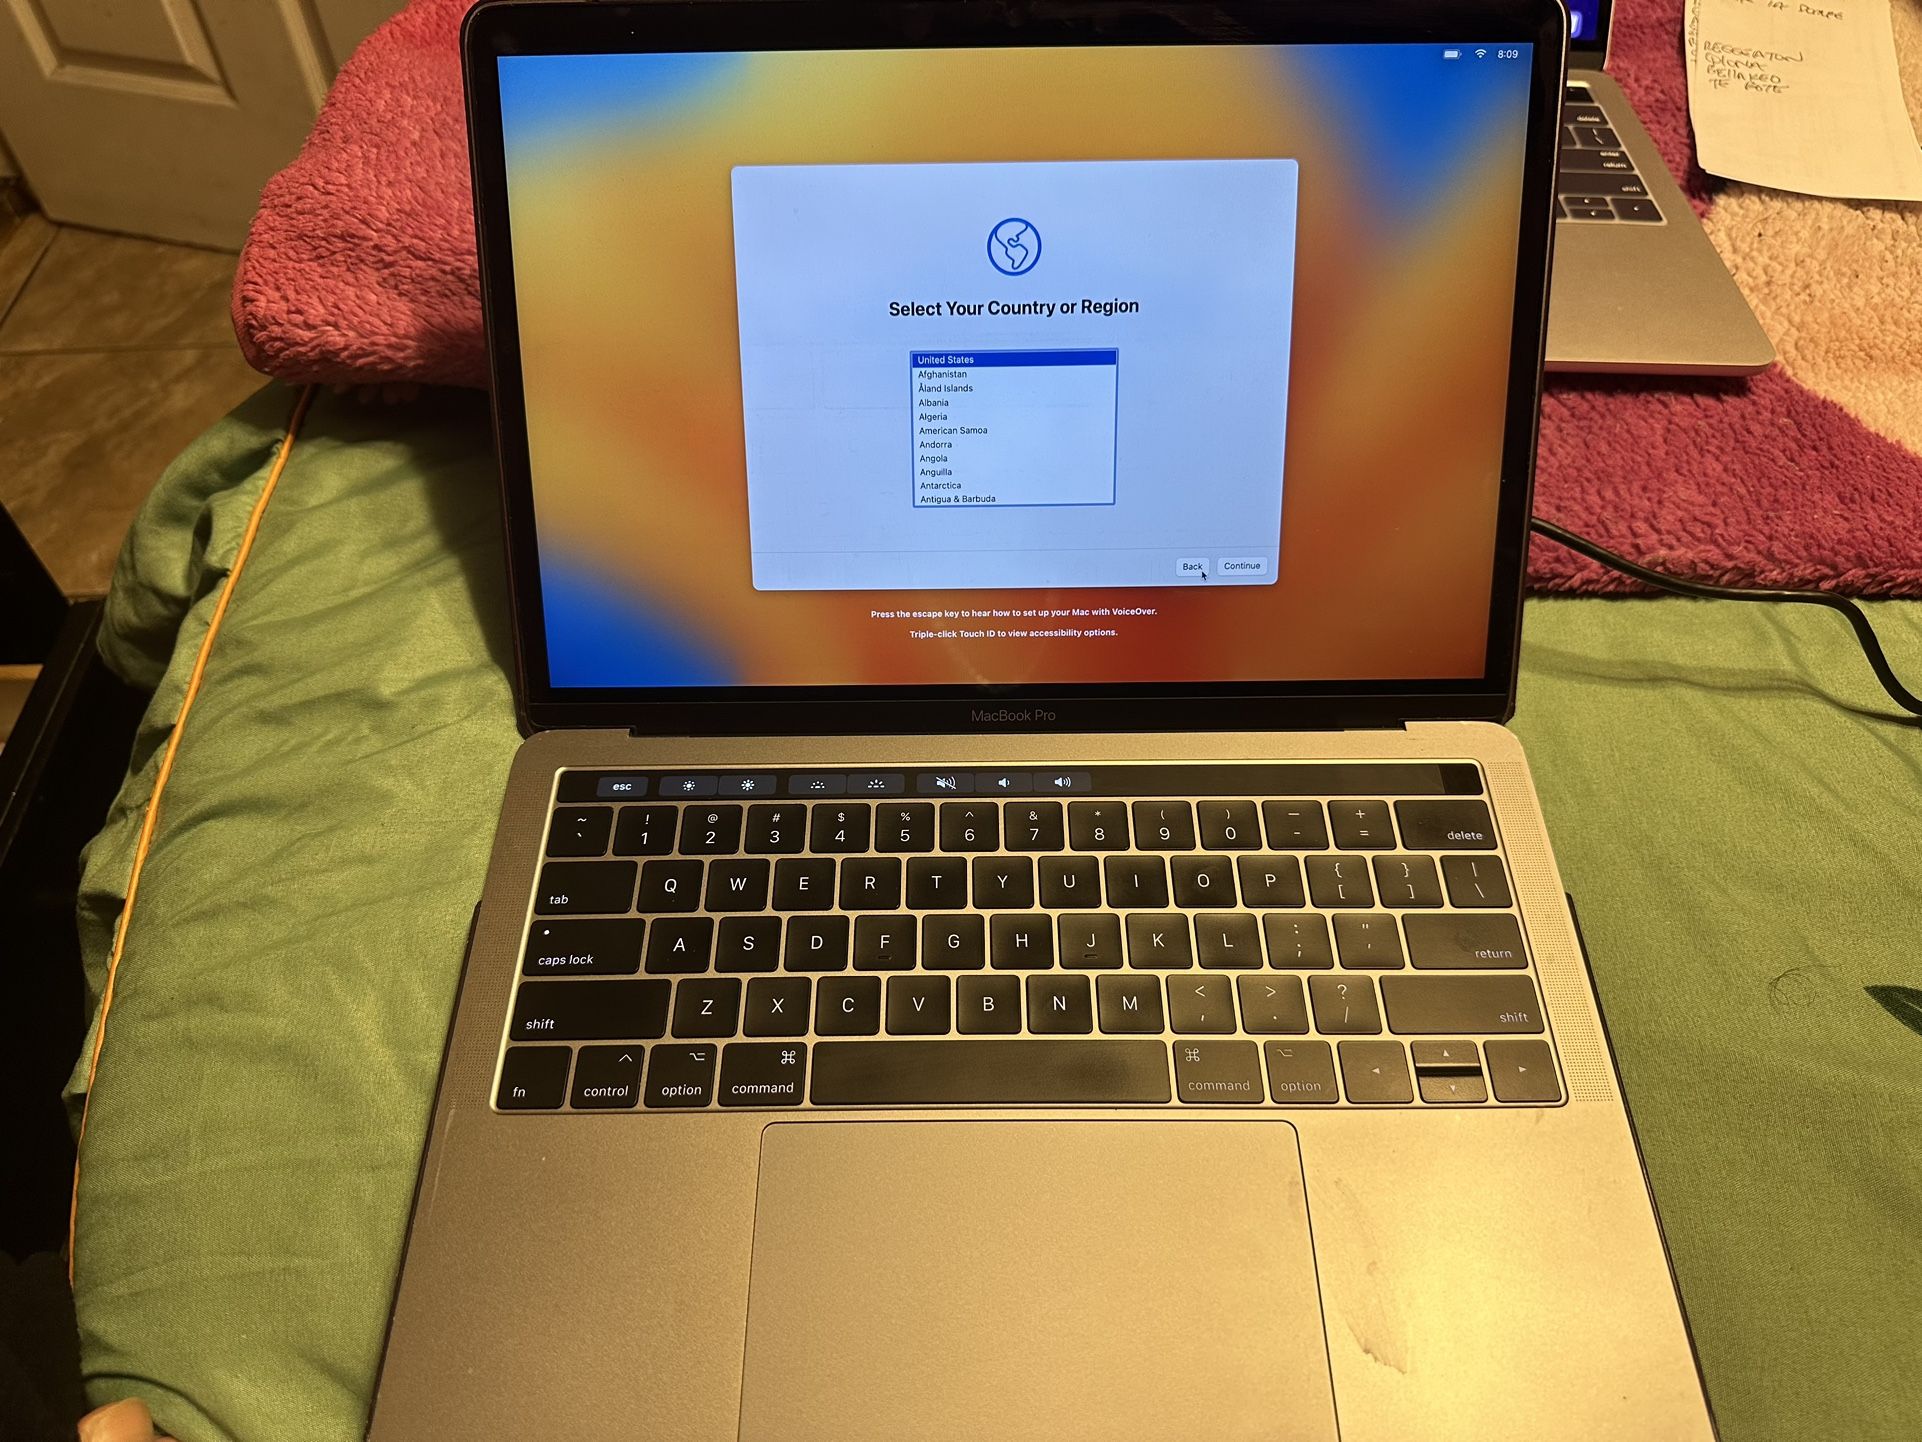 2017 MacBook Pro 13 Inch